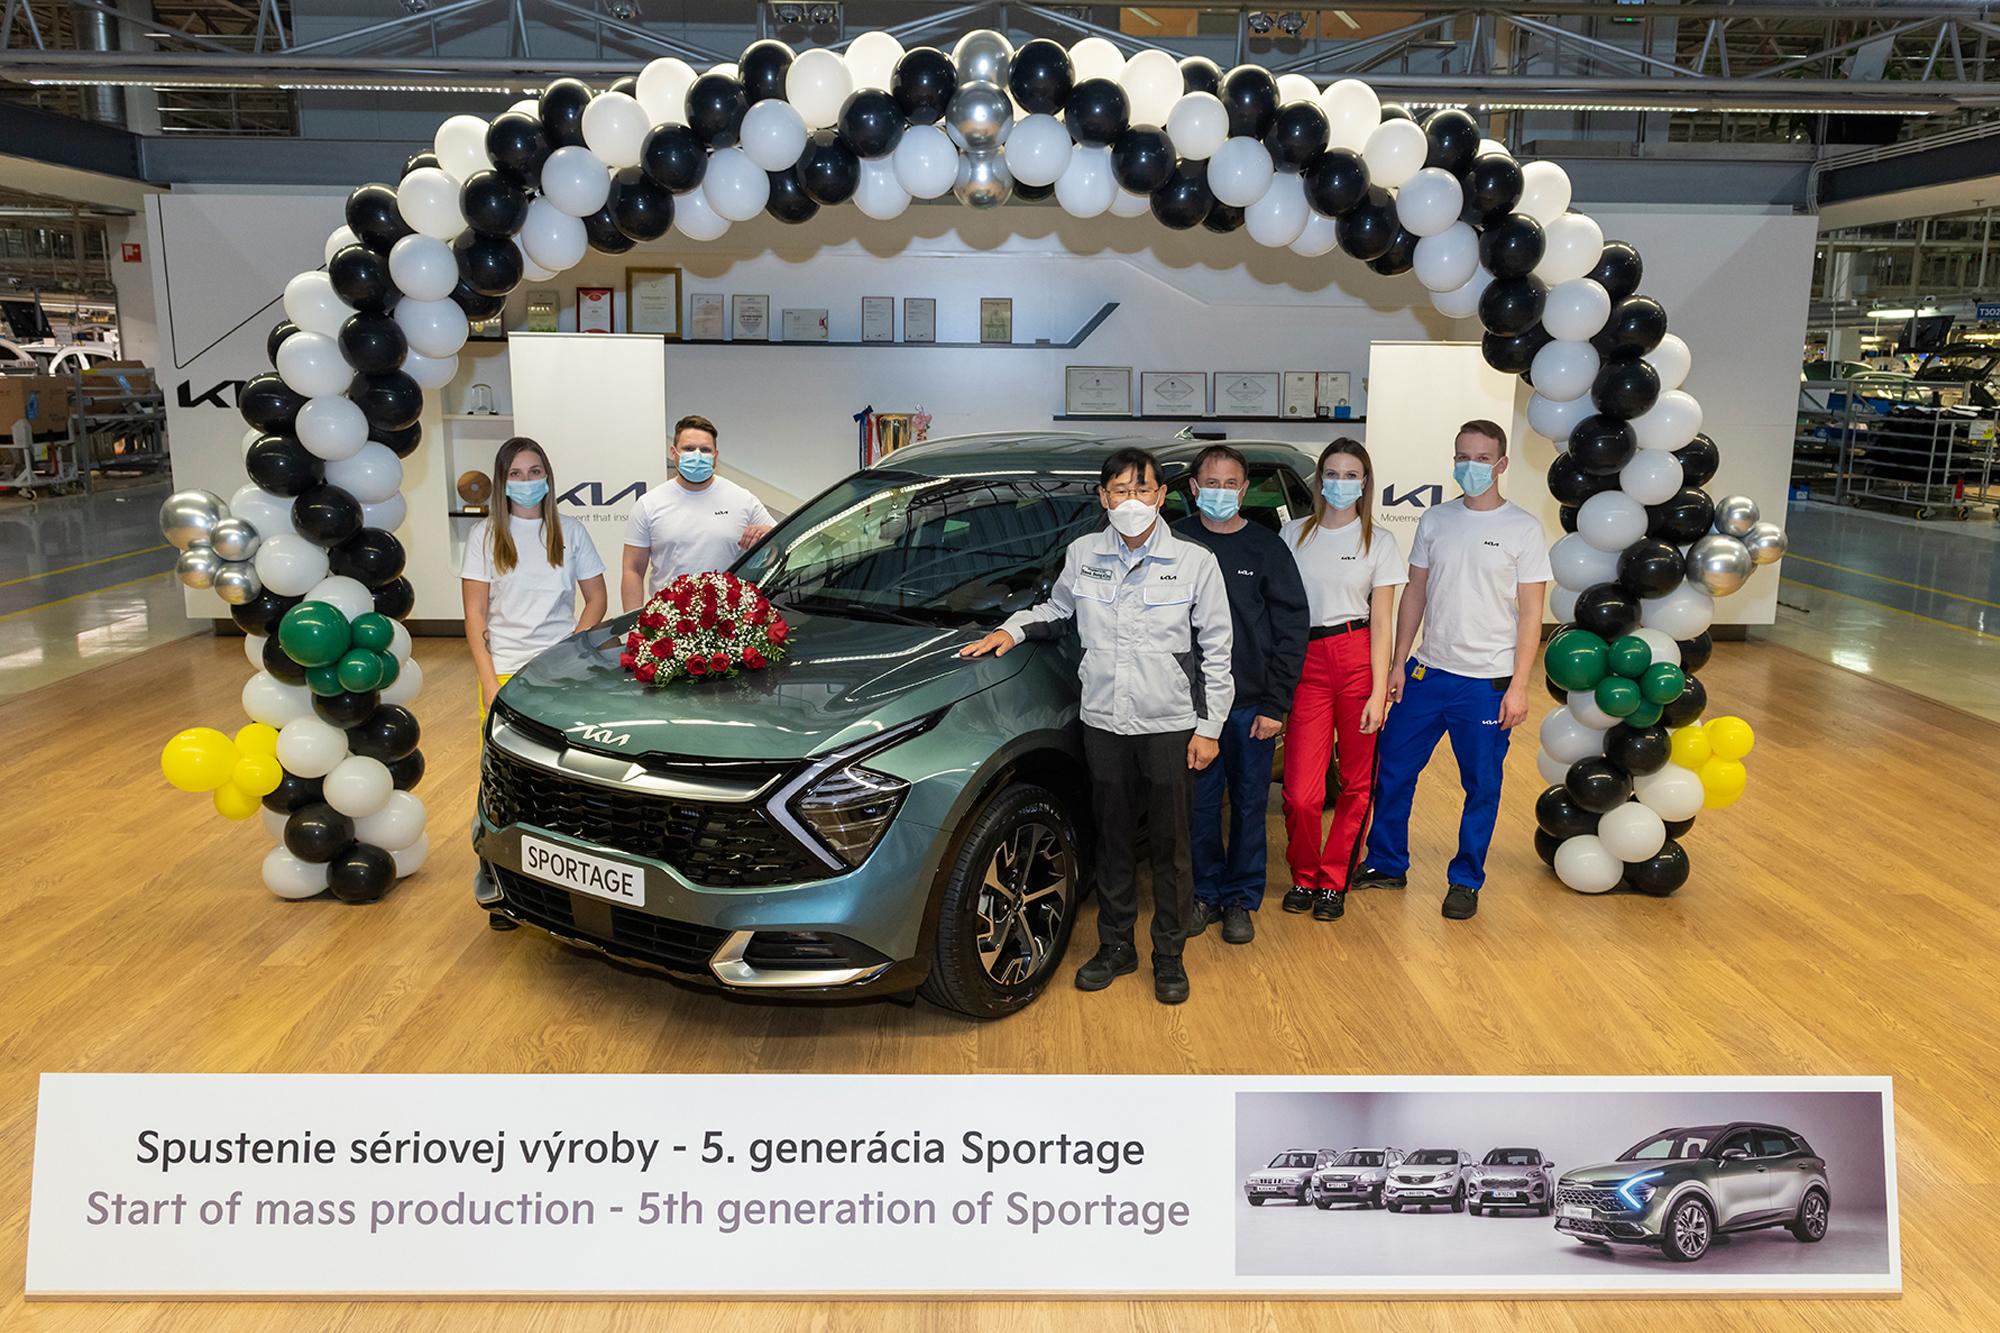 Η Kia ξεκινά την ευρωπαϊκή παραγωγή του νέου Sportage